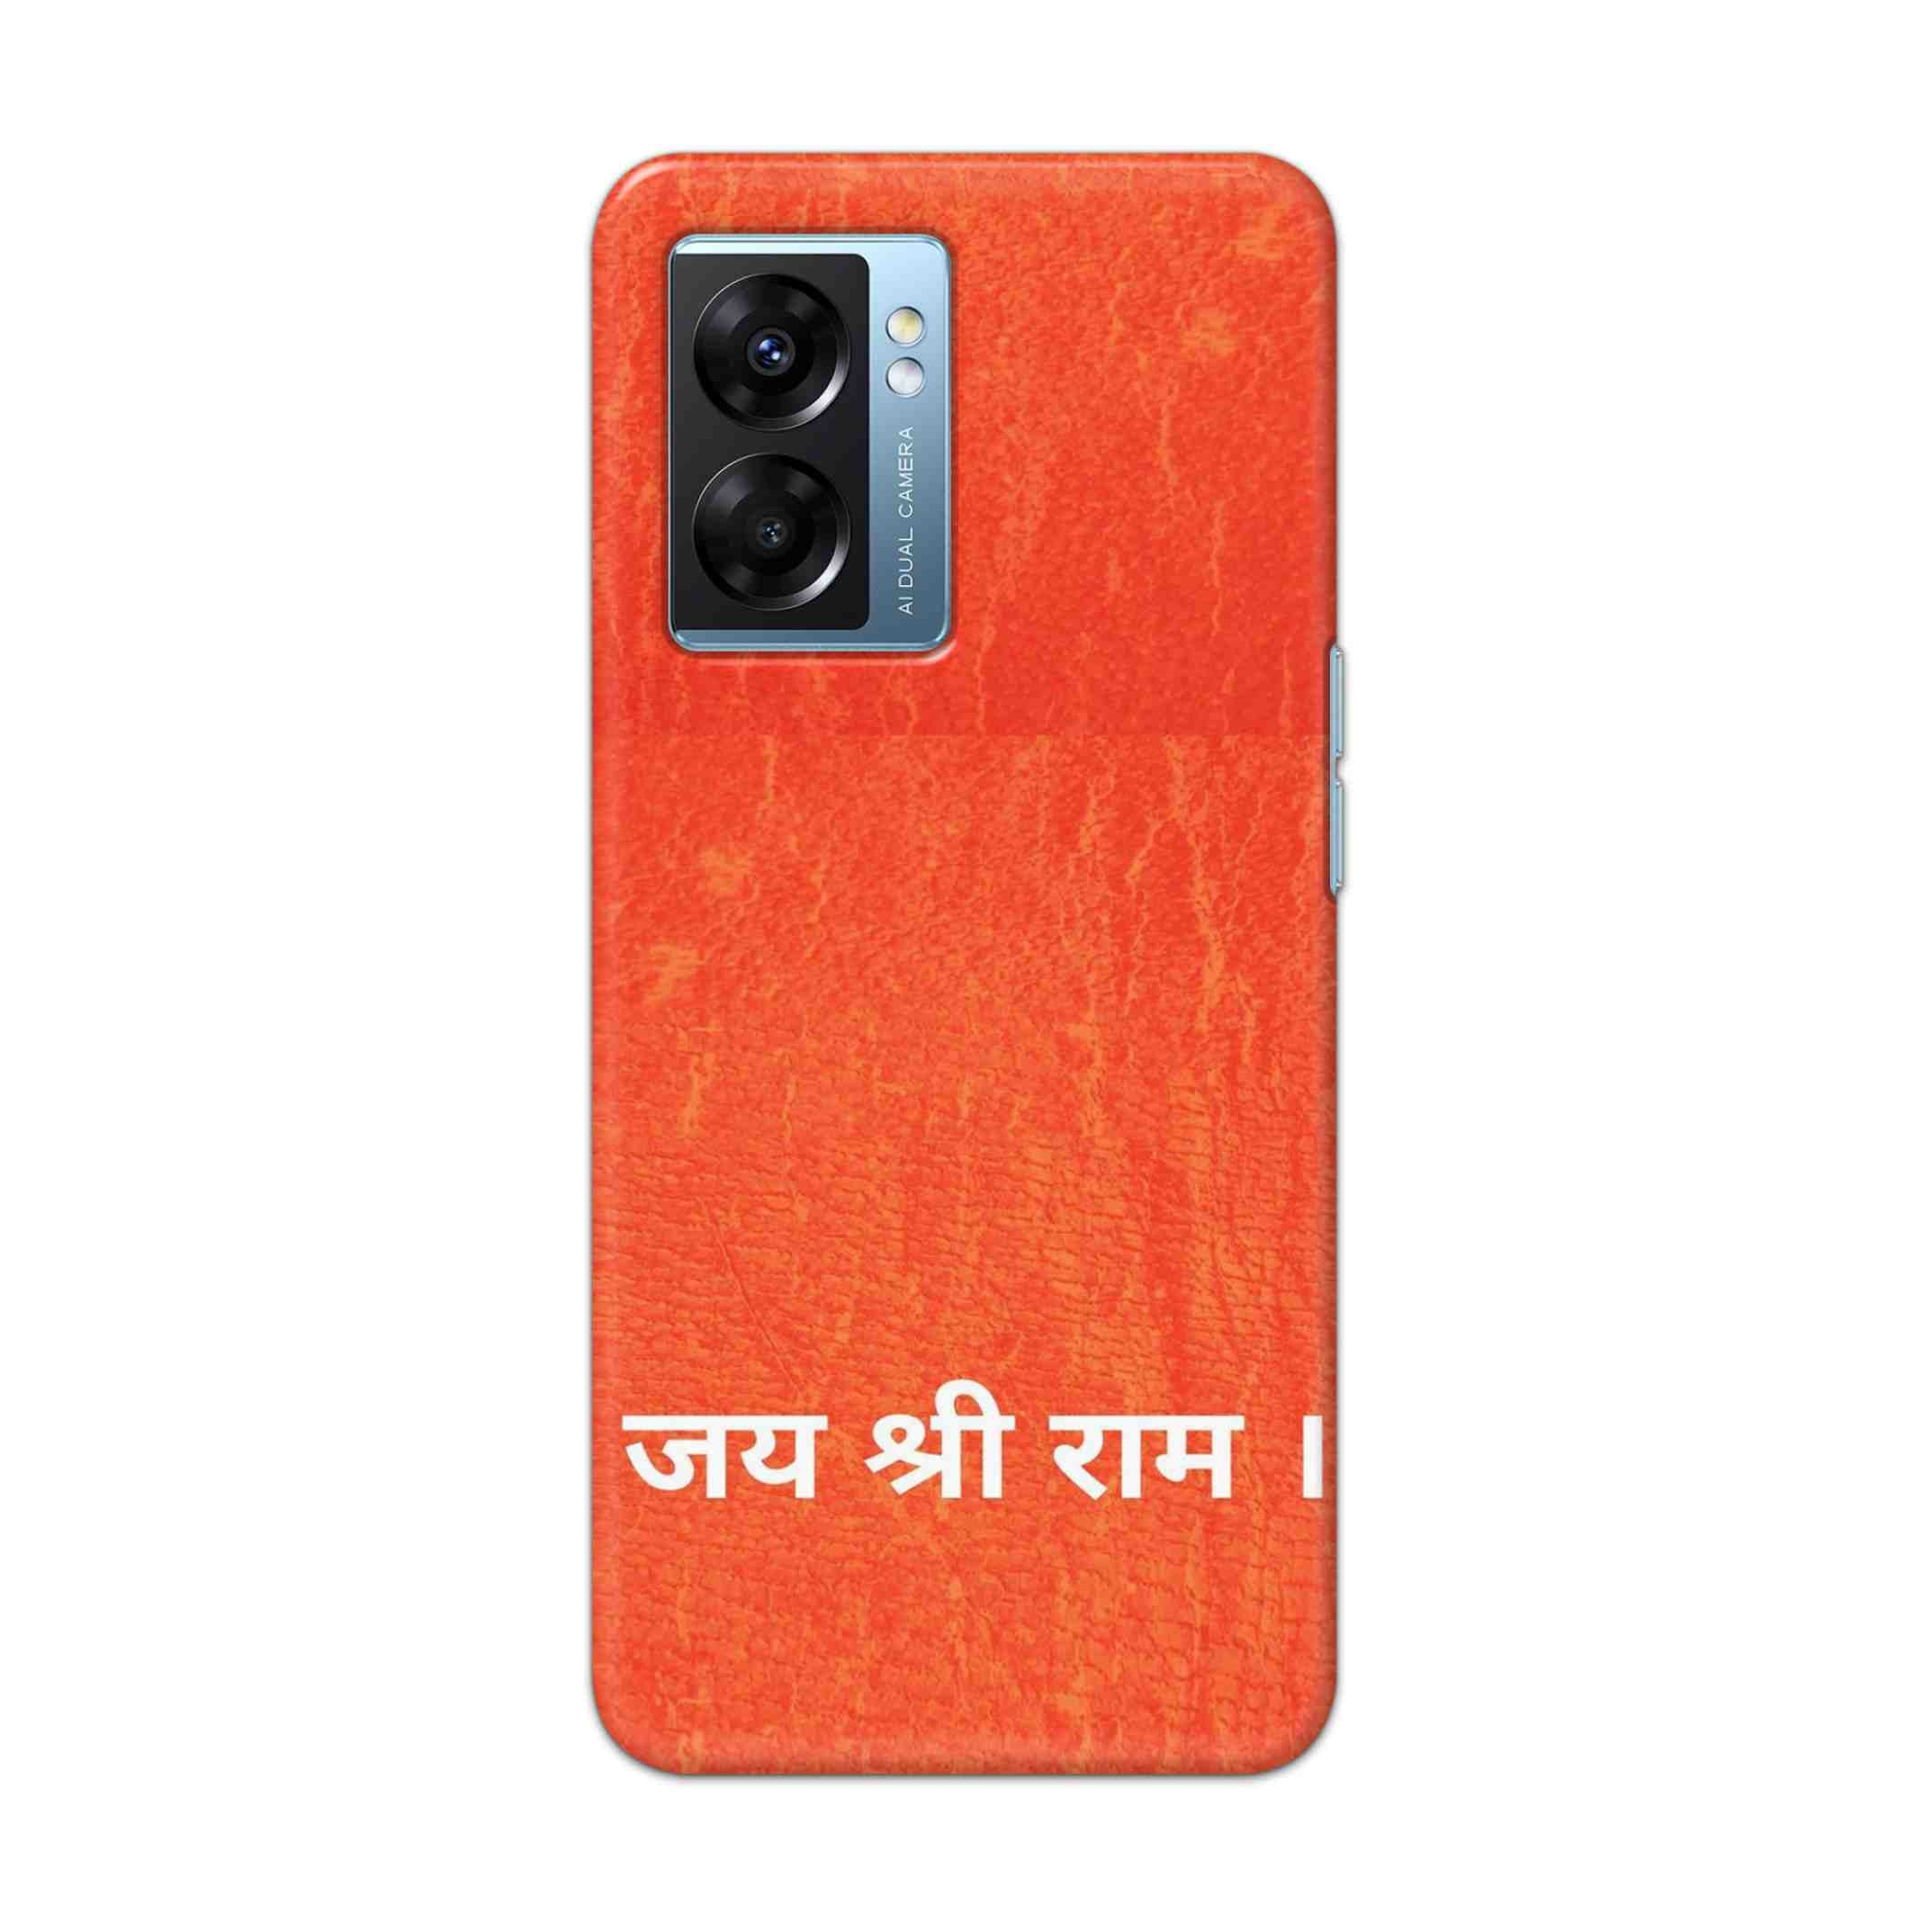 Buy Jai Shree Ram Hard Back Mobile Phone Case Cover For OPPO K10 5G Online